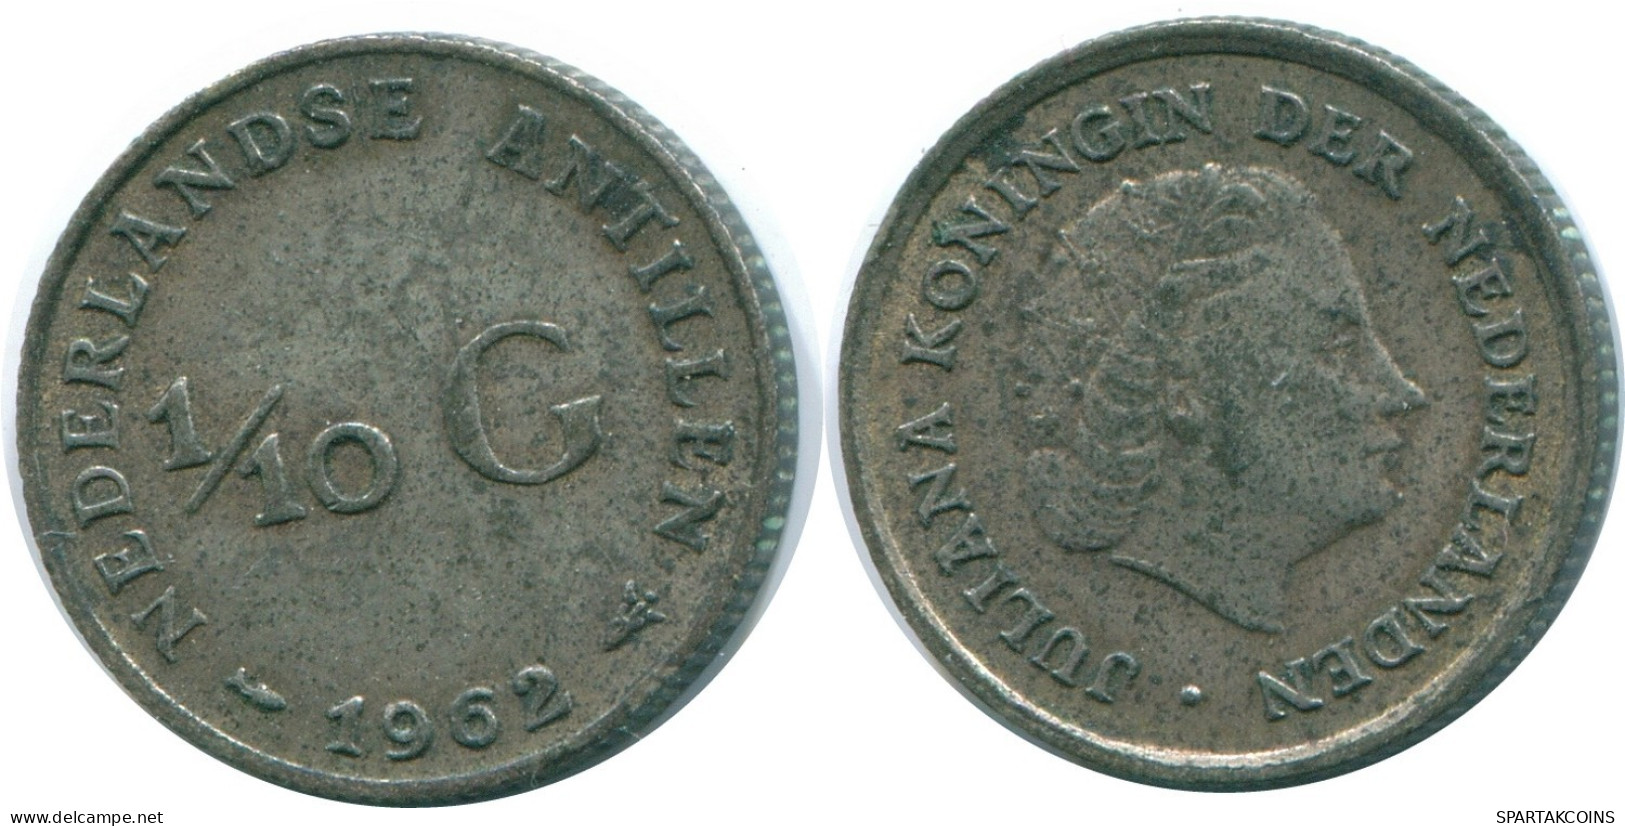 1/10 GULDEN 1962 NIEDERLÄNDISCHE ANTILLEN SILBER Koloniale Münze #NL12428.3.D.A - Antillas Neerlandesas